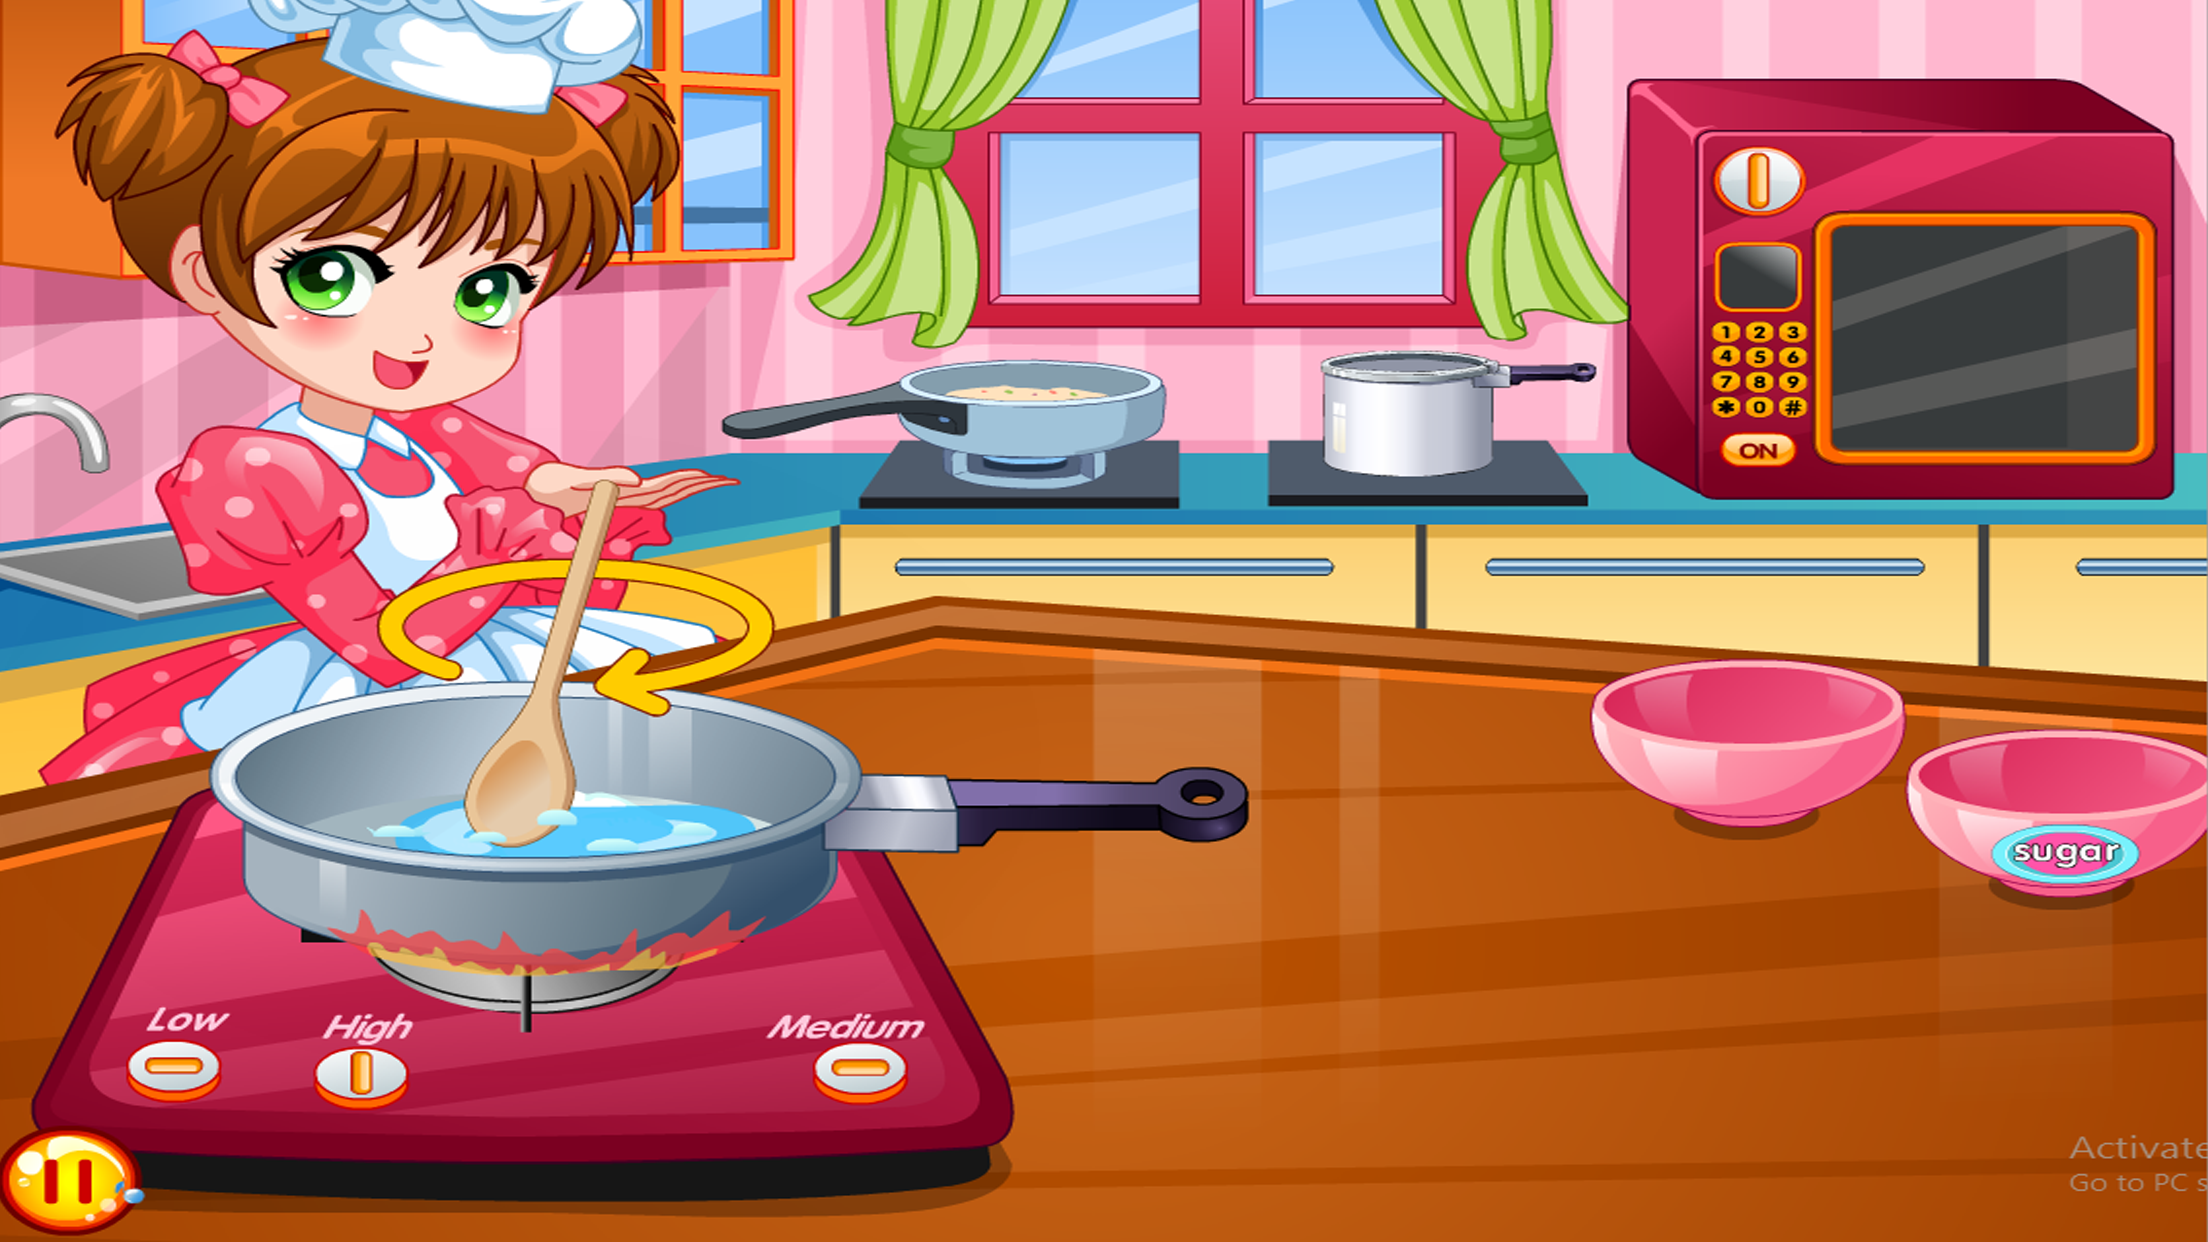 Game make download. Игры для девочек кулинария. العاب بنات طبخ Cooking. Игра готовим печенье с девочкой. Игры кулинария розовая заставка.